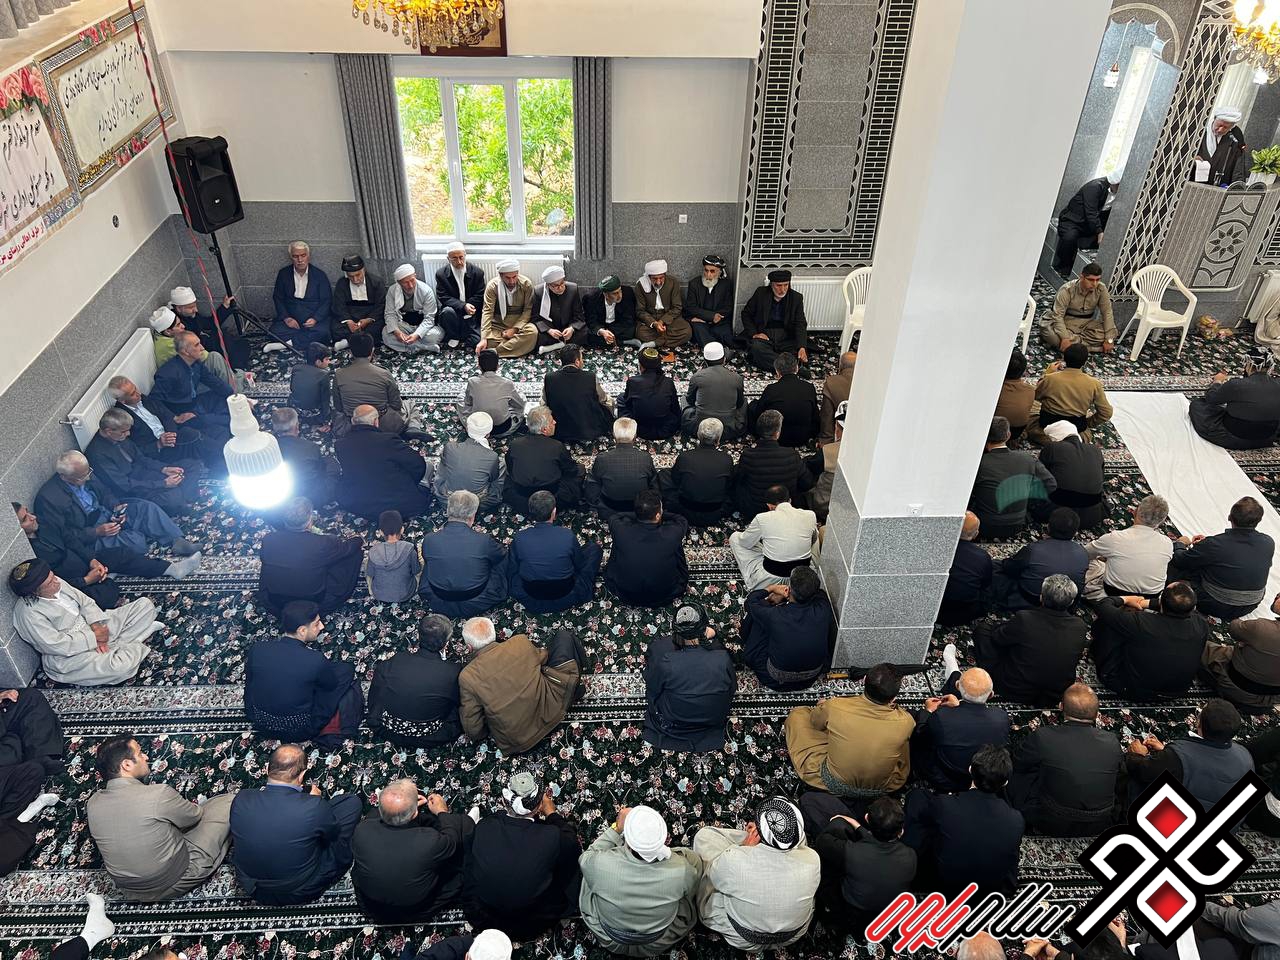 مسجد خیر ساز روستای مزیدی بخش باینگان پاوه افتتاح شد/ گزارش تصویری